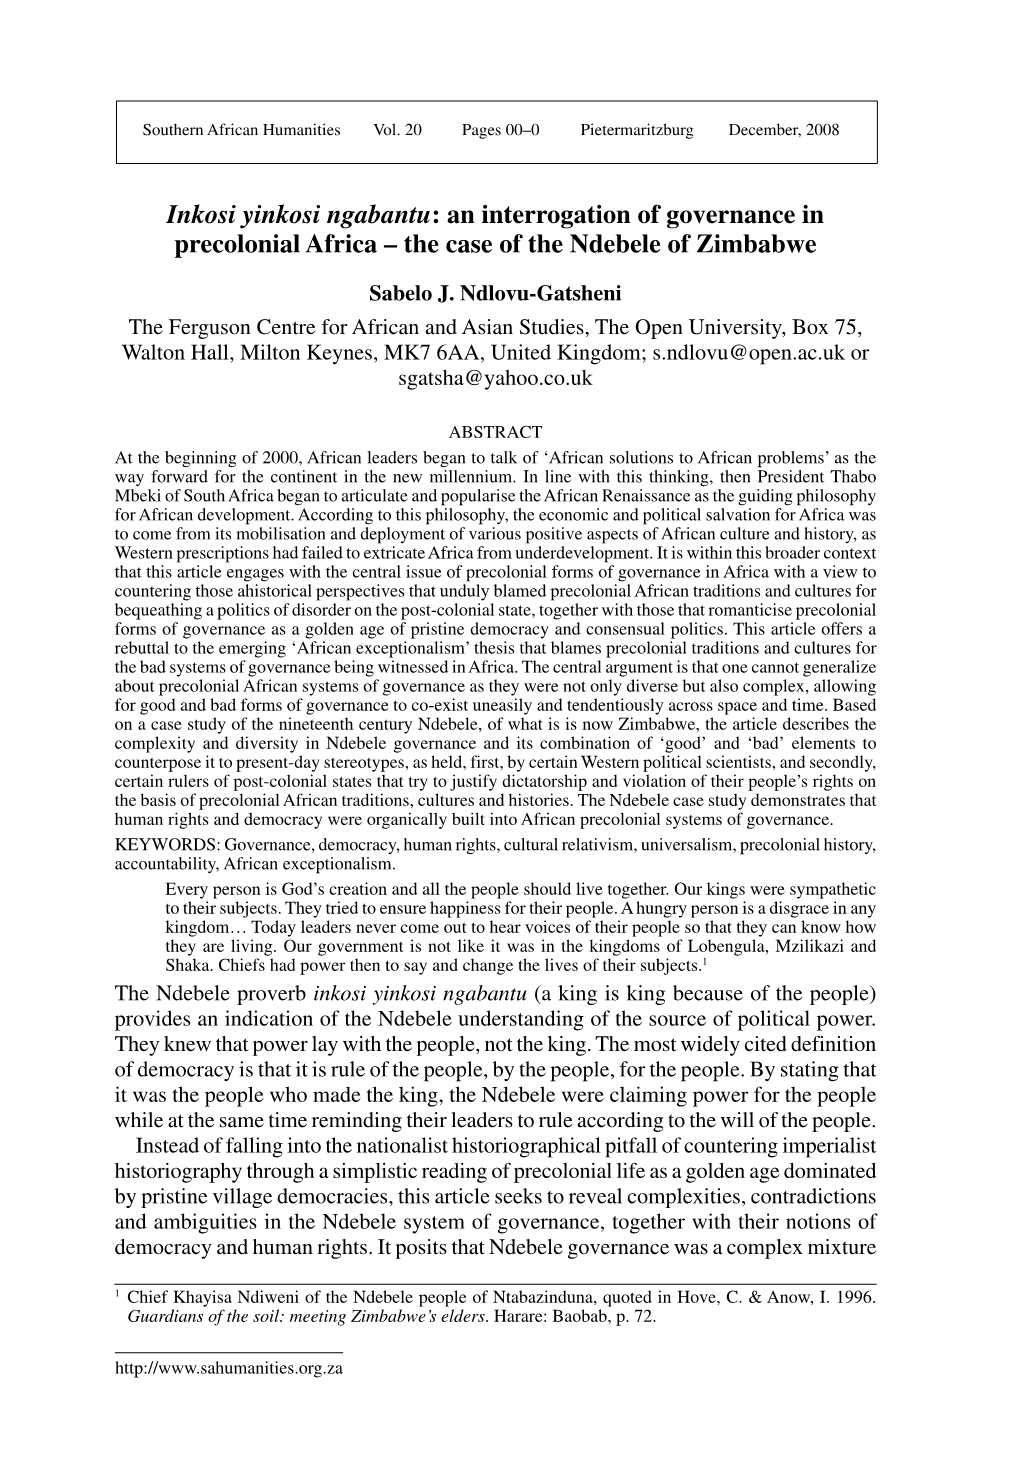 Inkosi Yinkosi Ngabantu: an Interrogation of Governance in Precolonial Africa – the Case of the Ndebele of Zimbabwe